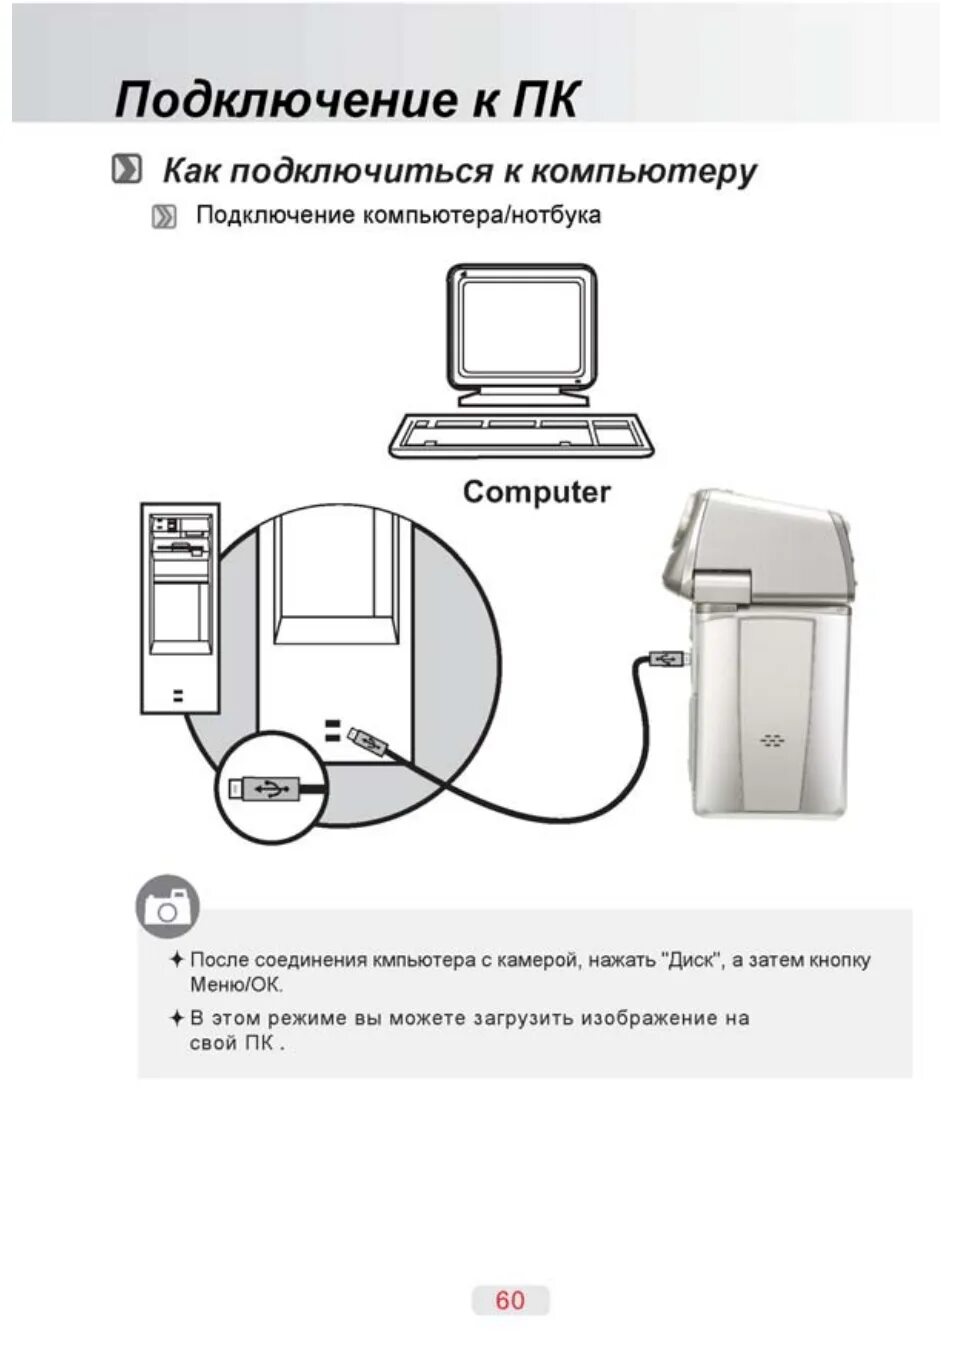 Как можно подключиться к компьютеру. Инструкция включения ПК ПК. Схема подключения компьютера. Схема как подключить компьютер. Как подсоединиться к компьютеру.